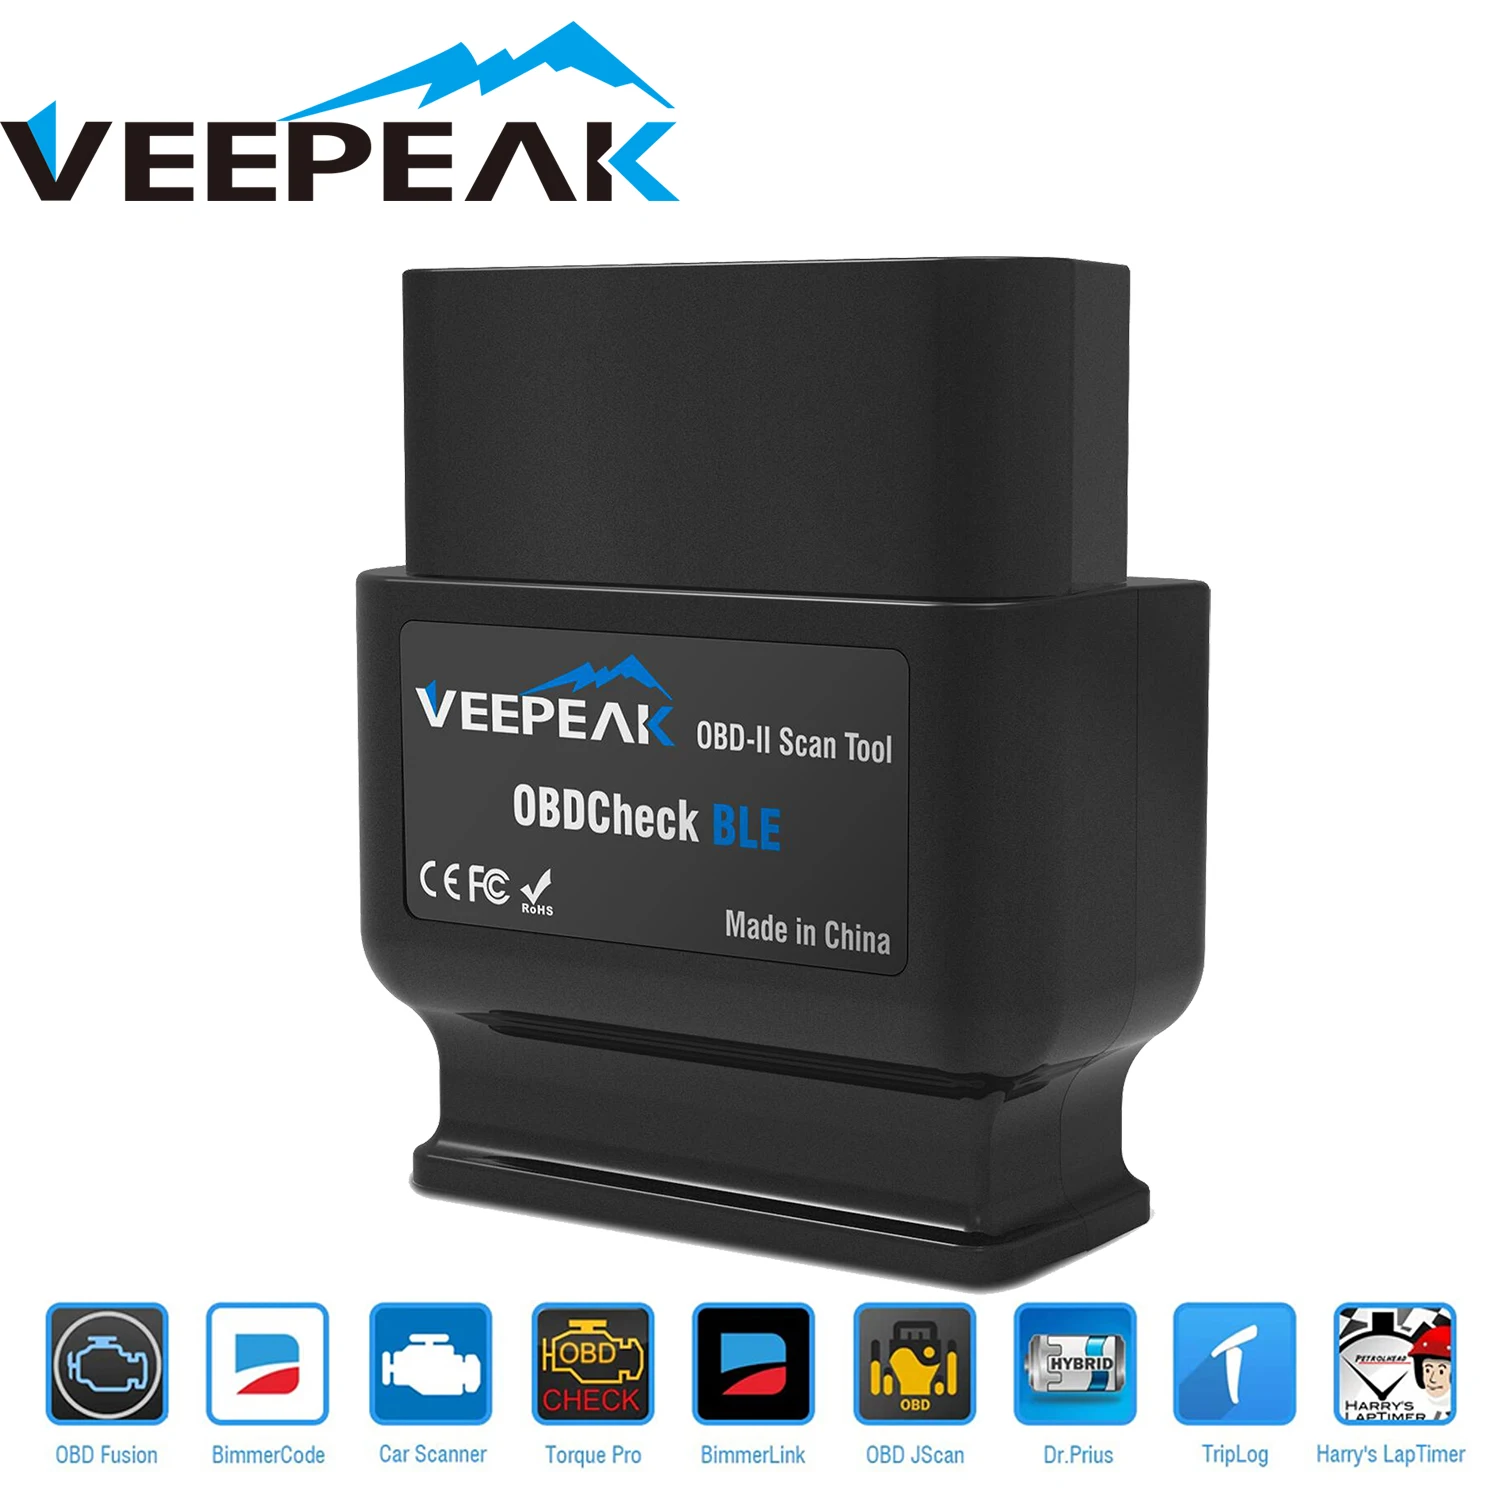 Veepeak-herramienta de diagnóstico OBD2 con Bluetooth, escáner automático OBD II para iOS y Android, BT4.0, revisión de motor de coche